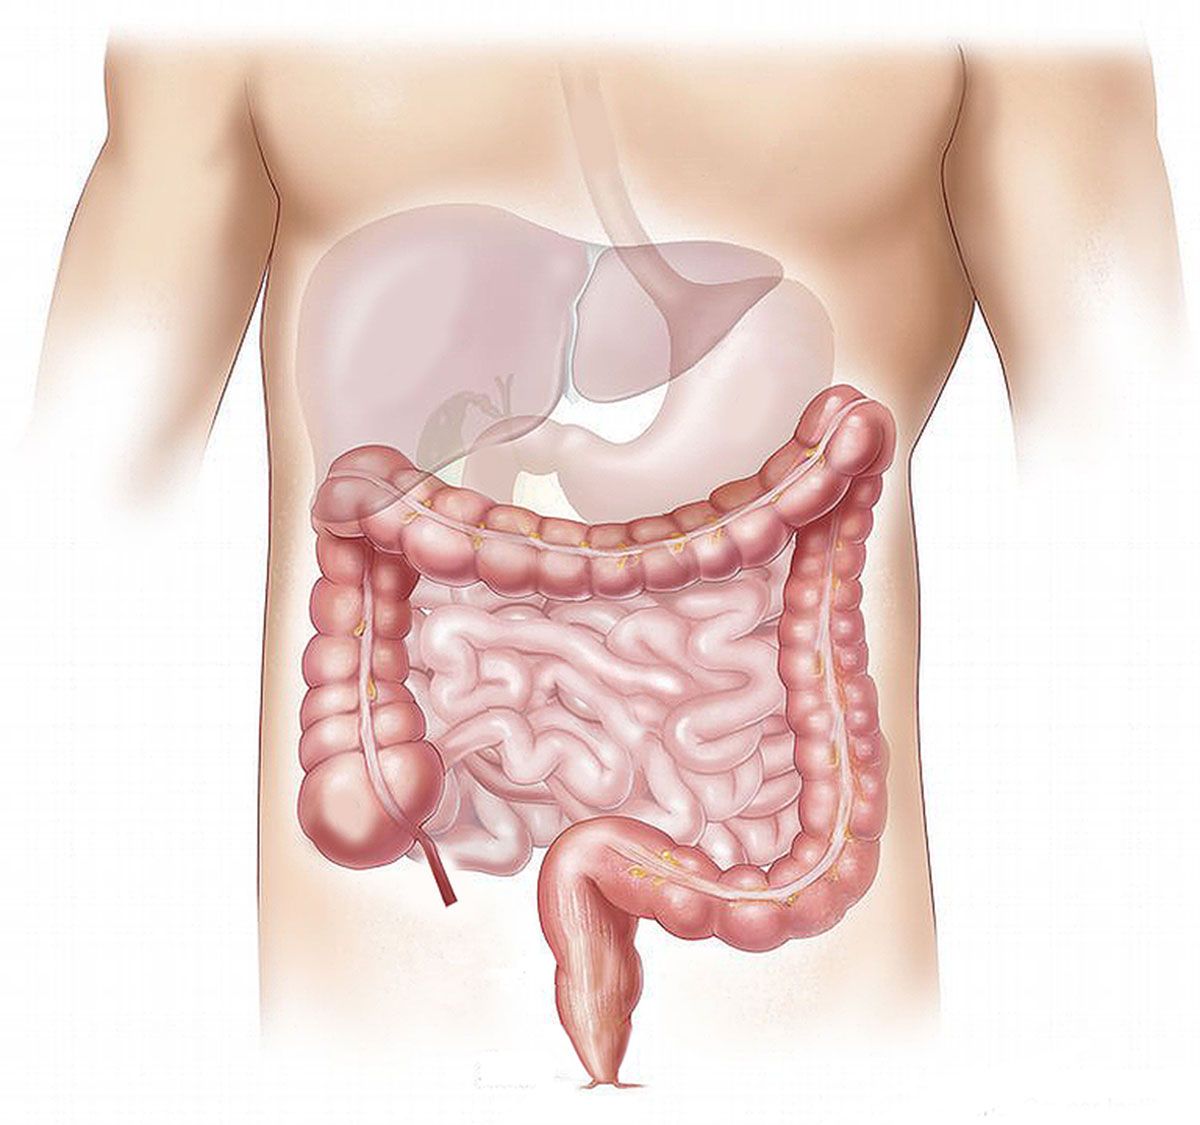 Detoxifiere colon simptome, Alimente care pot ajuta la detoxifierea colonului